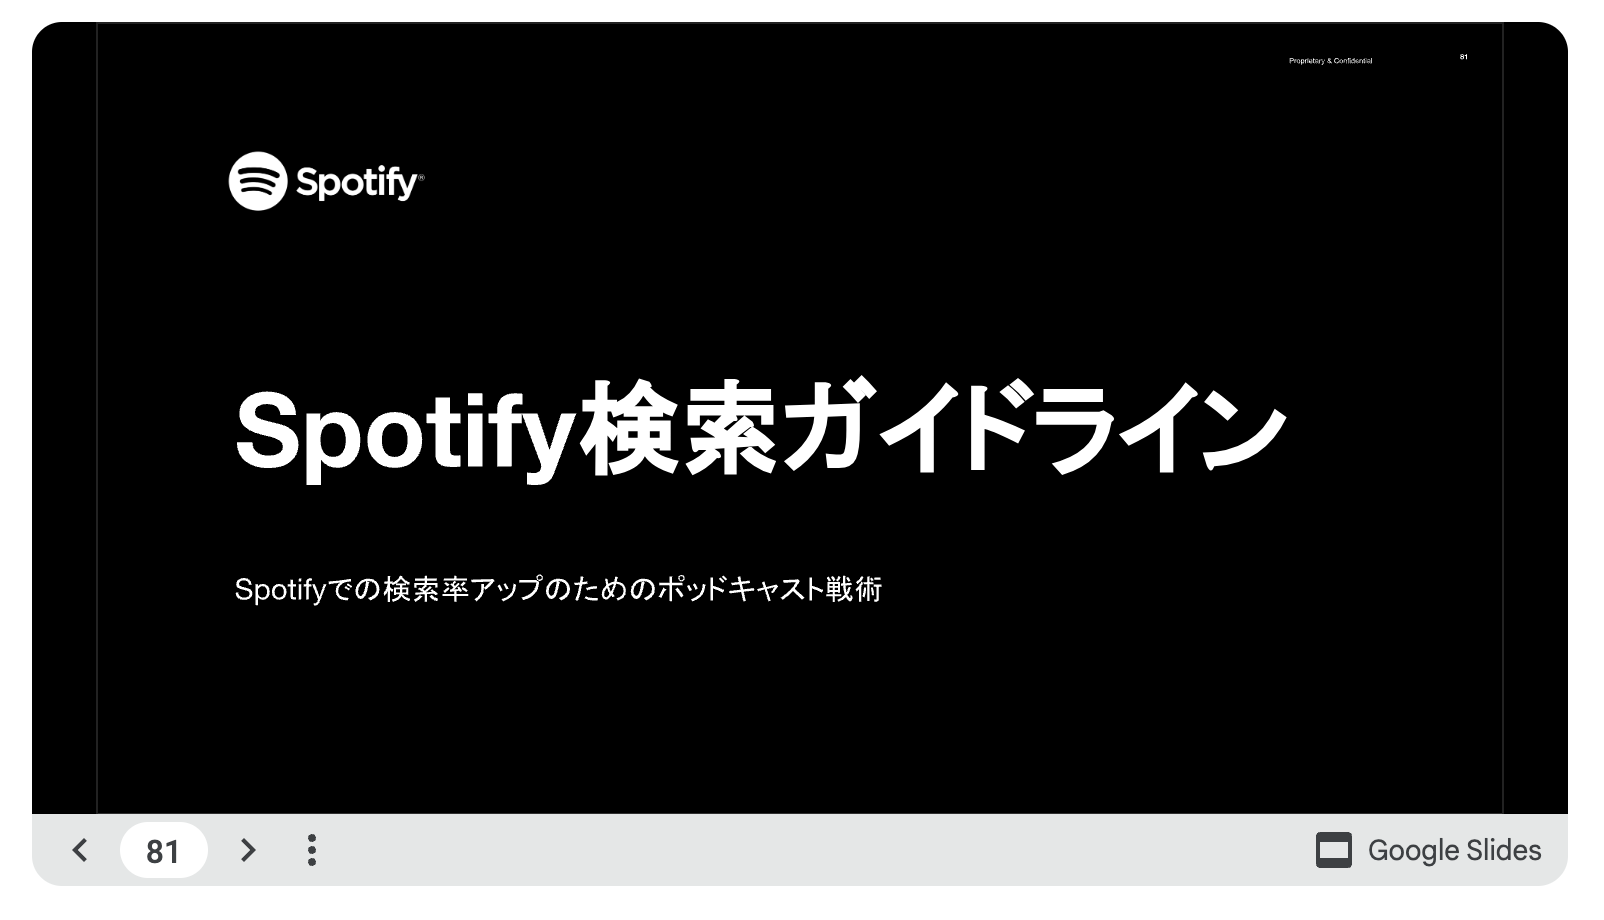 SpotifyのSEOスライド